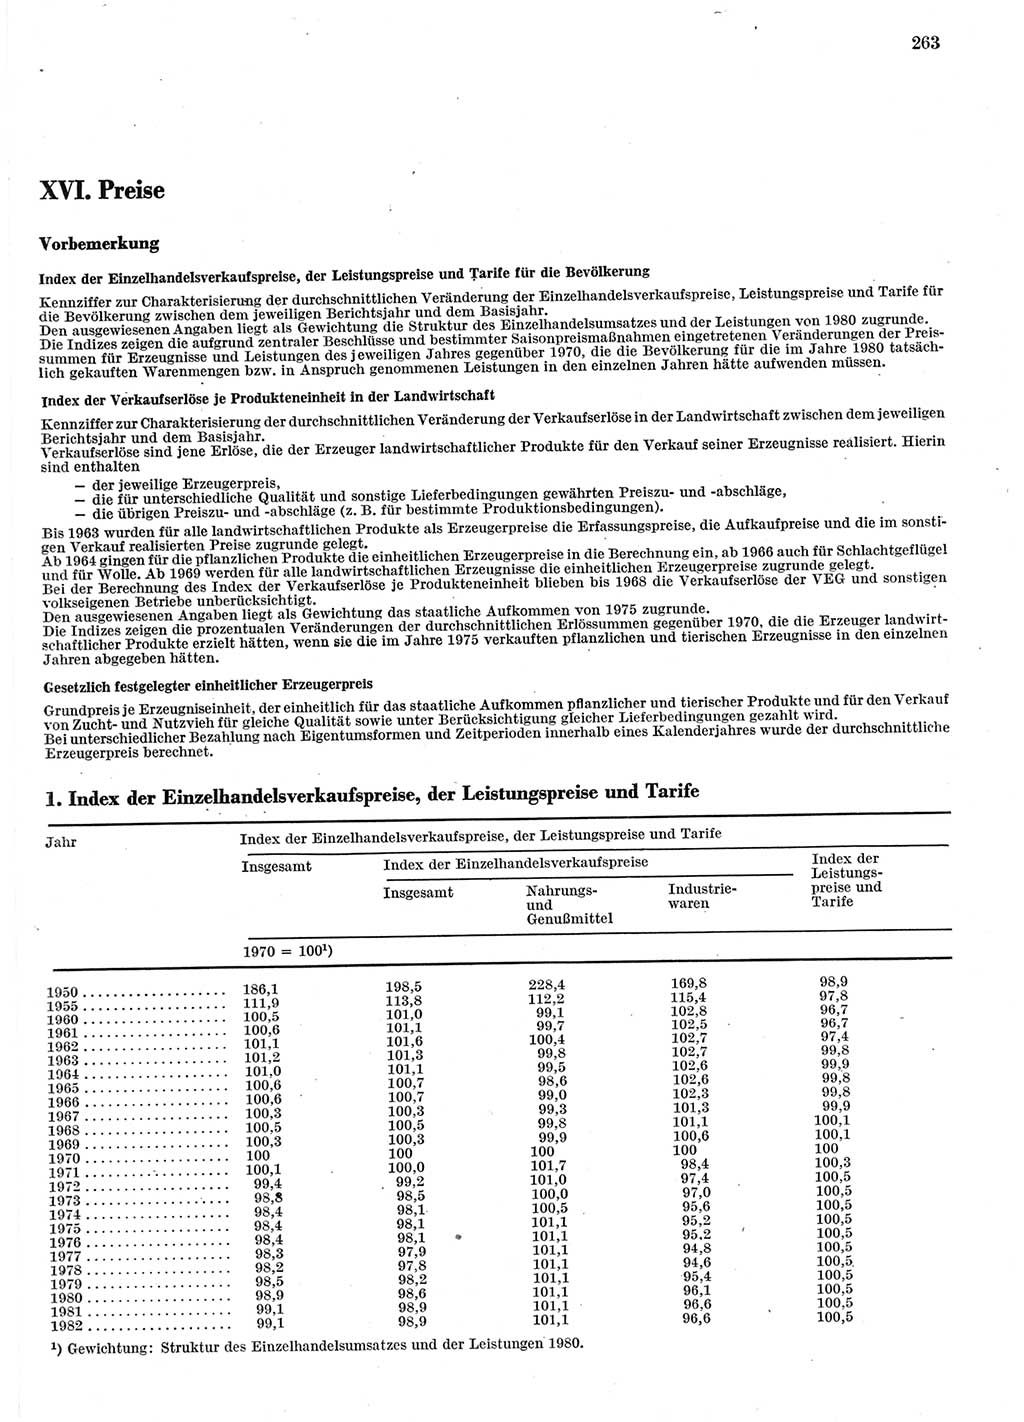 Statistisches Jahrbuch der Deutschen Demokratischen Republik (DDR) 1983, Seite 263 (Stat. Jb. DDR 1983, S. 263)